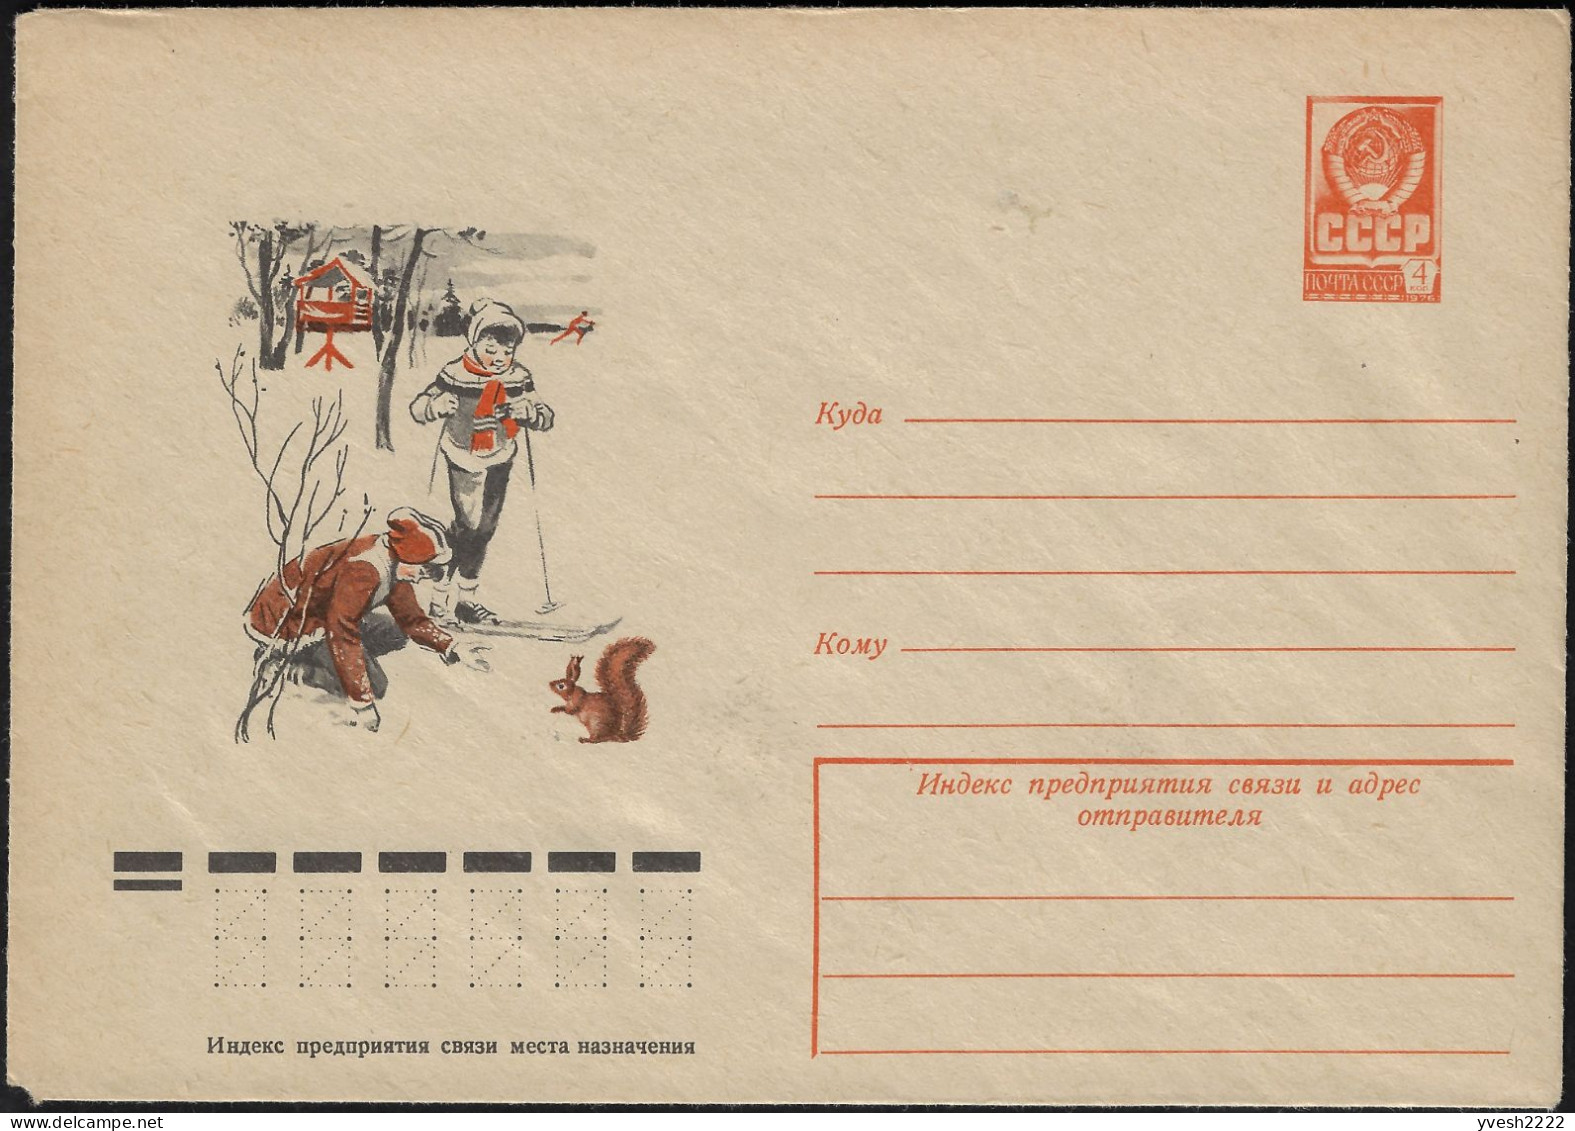 URSS 1977. Entier Postal Enveloppe. Enfants, Ski De Fond, écureuil - Rodents